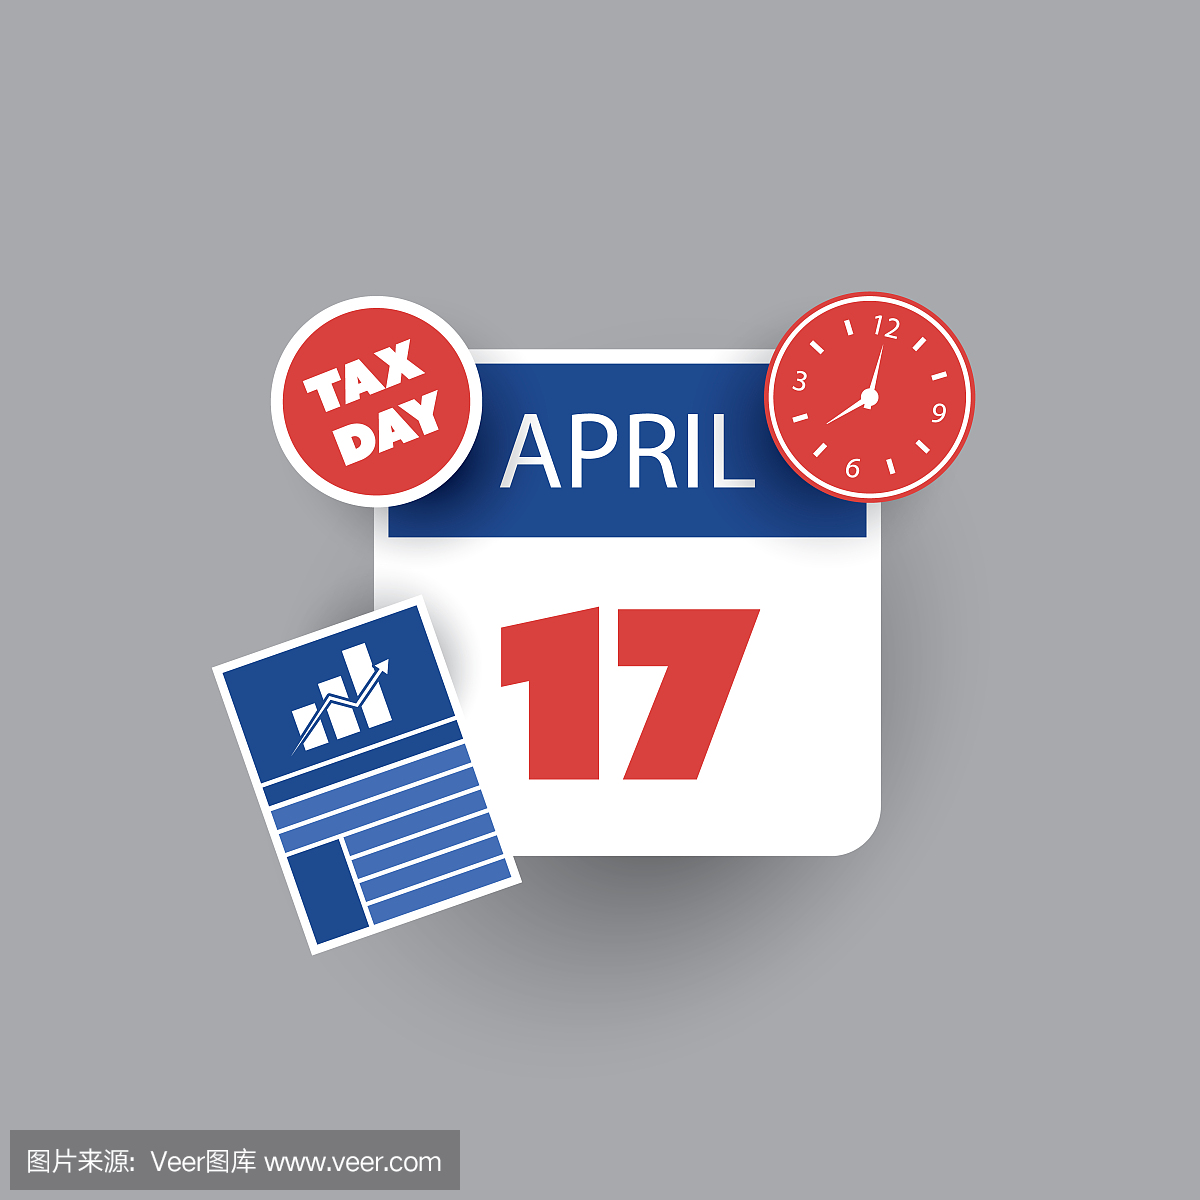 美国税收日图标 - 日历设计模板2018年